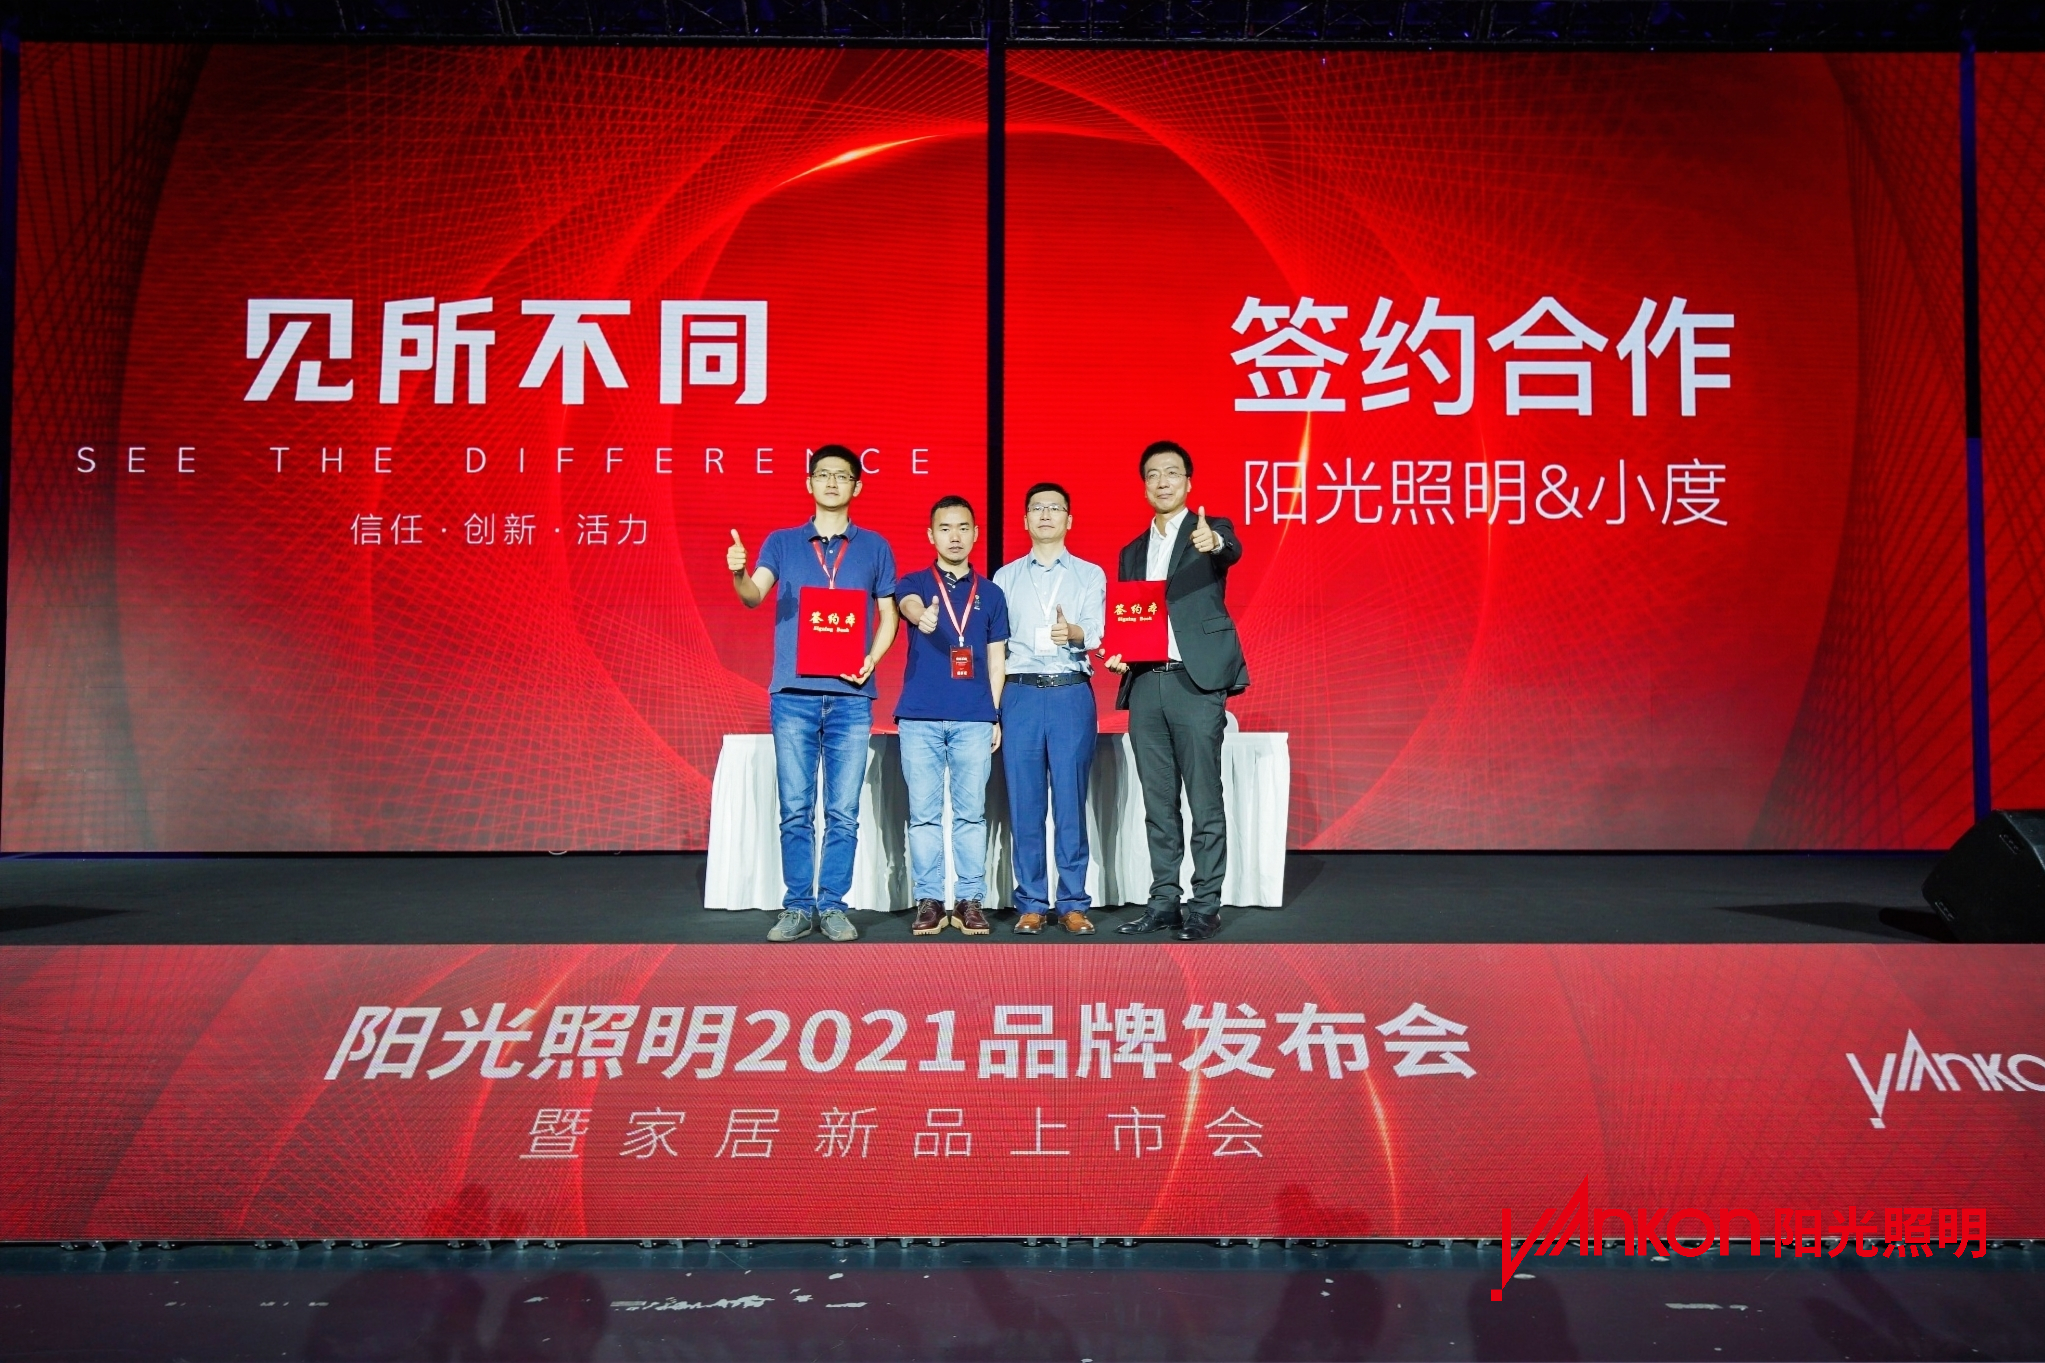 bat365在线平台(中文)官方网站发力国内市场 新渠道助力“新零售”